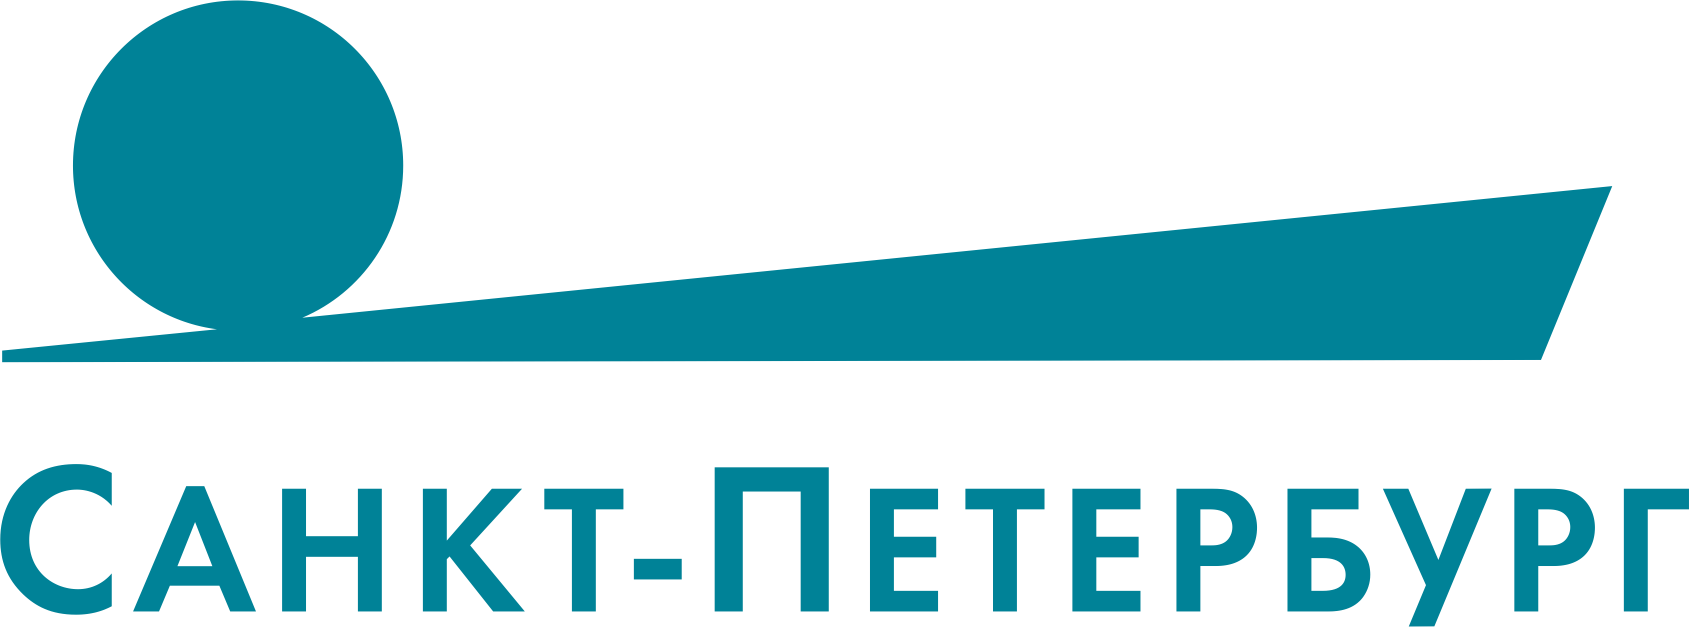 ТВ Санкт-Петербург лого. ТВ СПБ логотип. Телеканал Санкт-Петербург логотип PNG. Каналы Санкт-Петербурга.